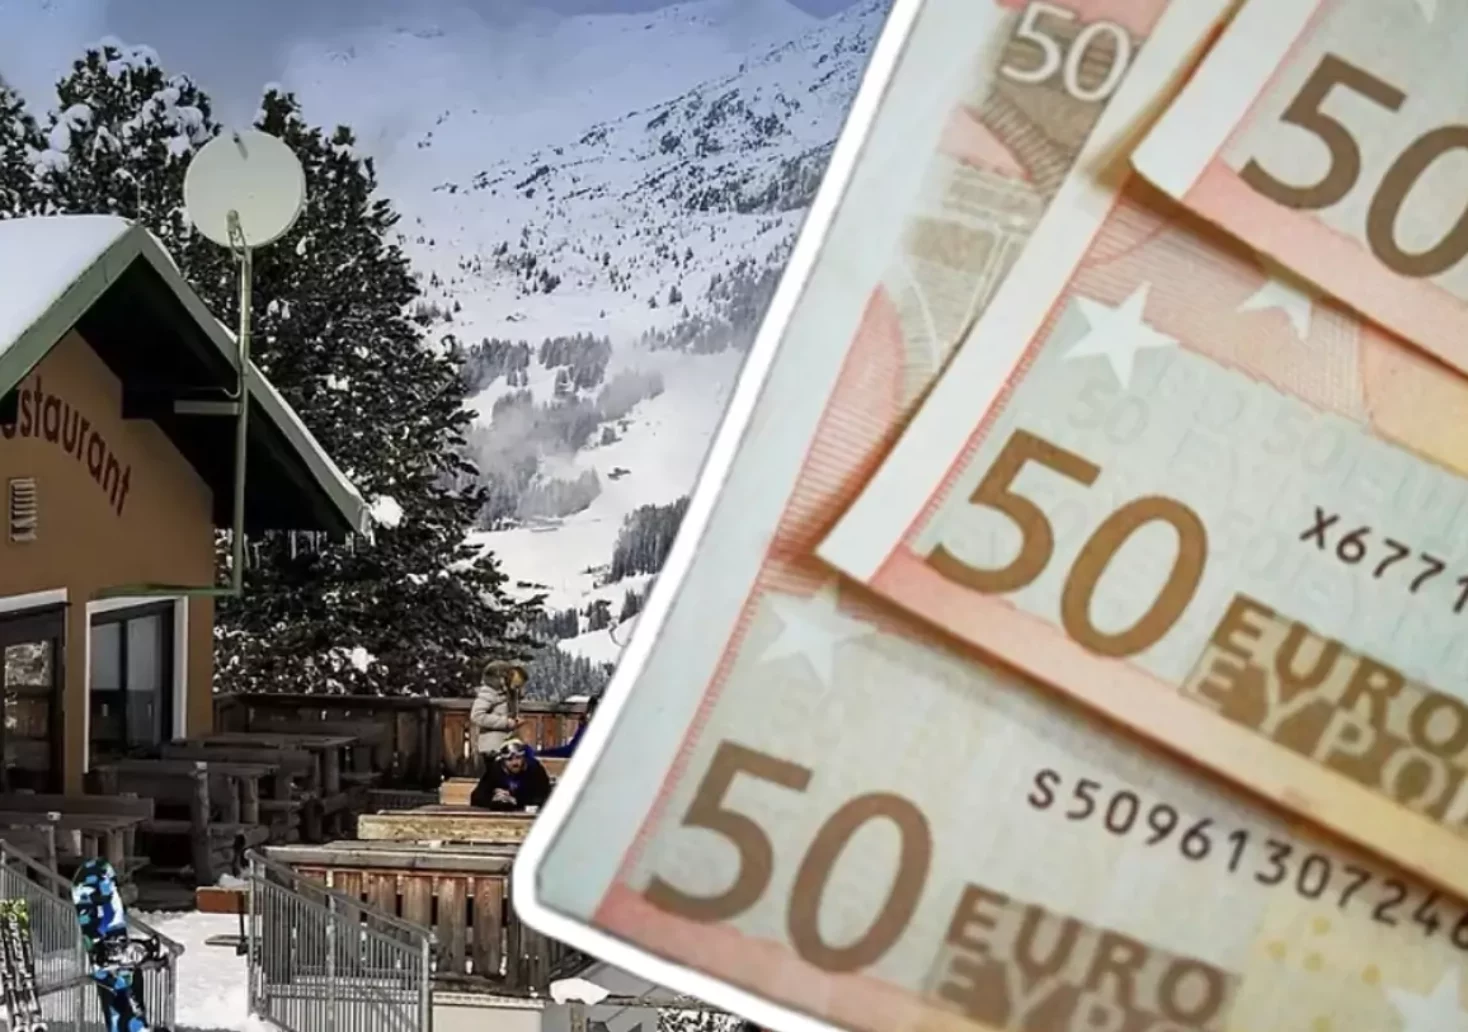 Symbolfoto auf 5min.at zeigt eine Skihütte und 50-Euro-Scheinen.